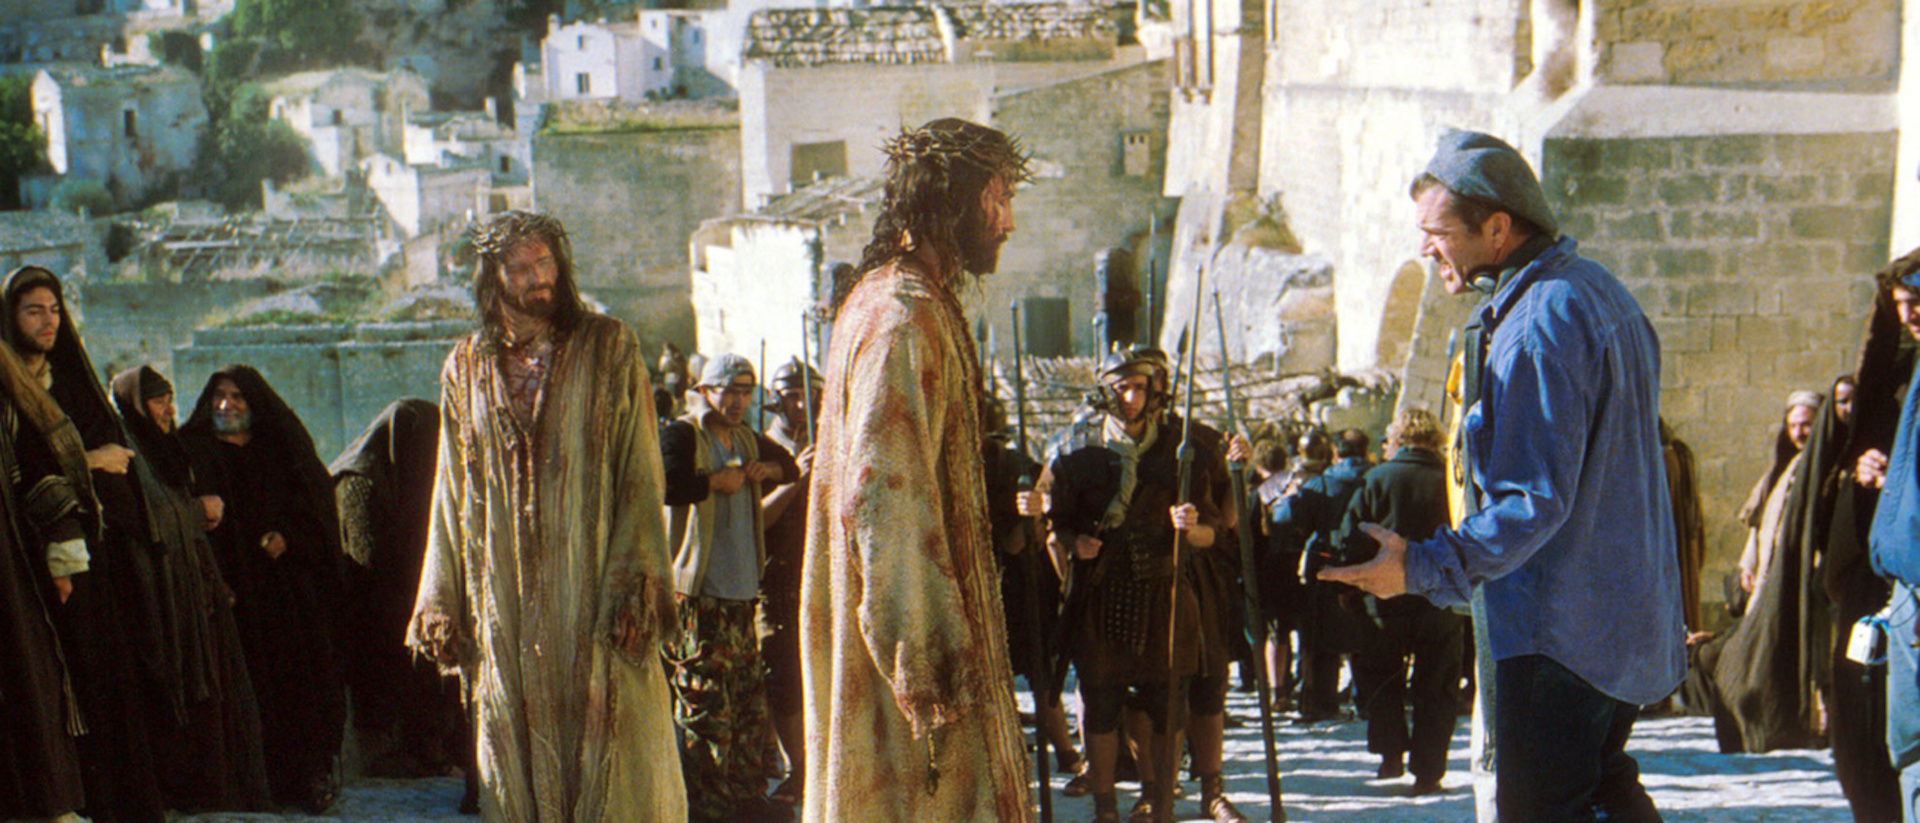 Dreharbeiten zu "The Passion of the Christ" von Mel Gibson